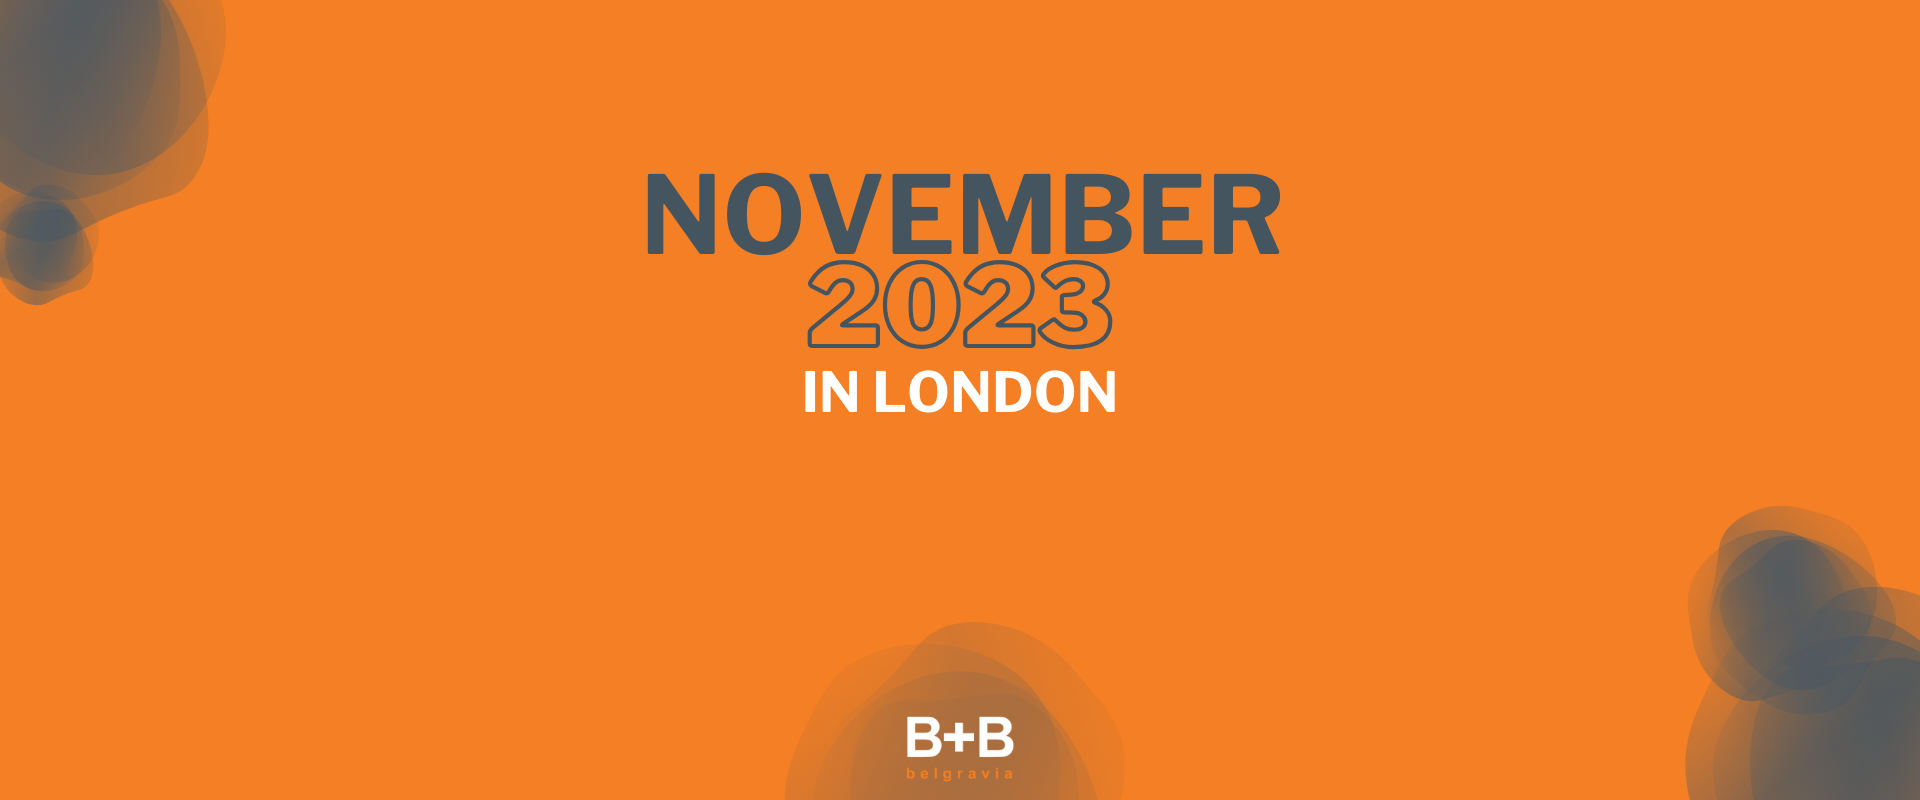 November 2023 in London - B+B Belgravia